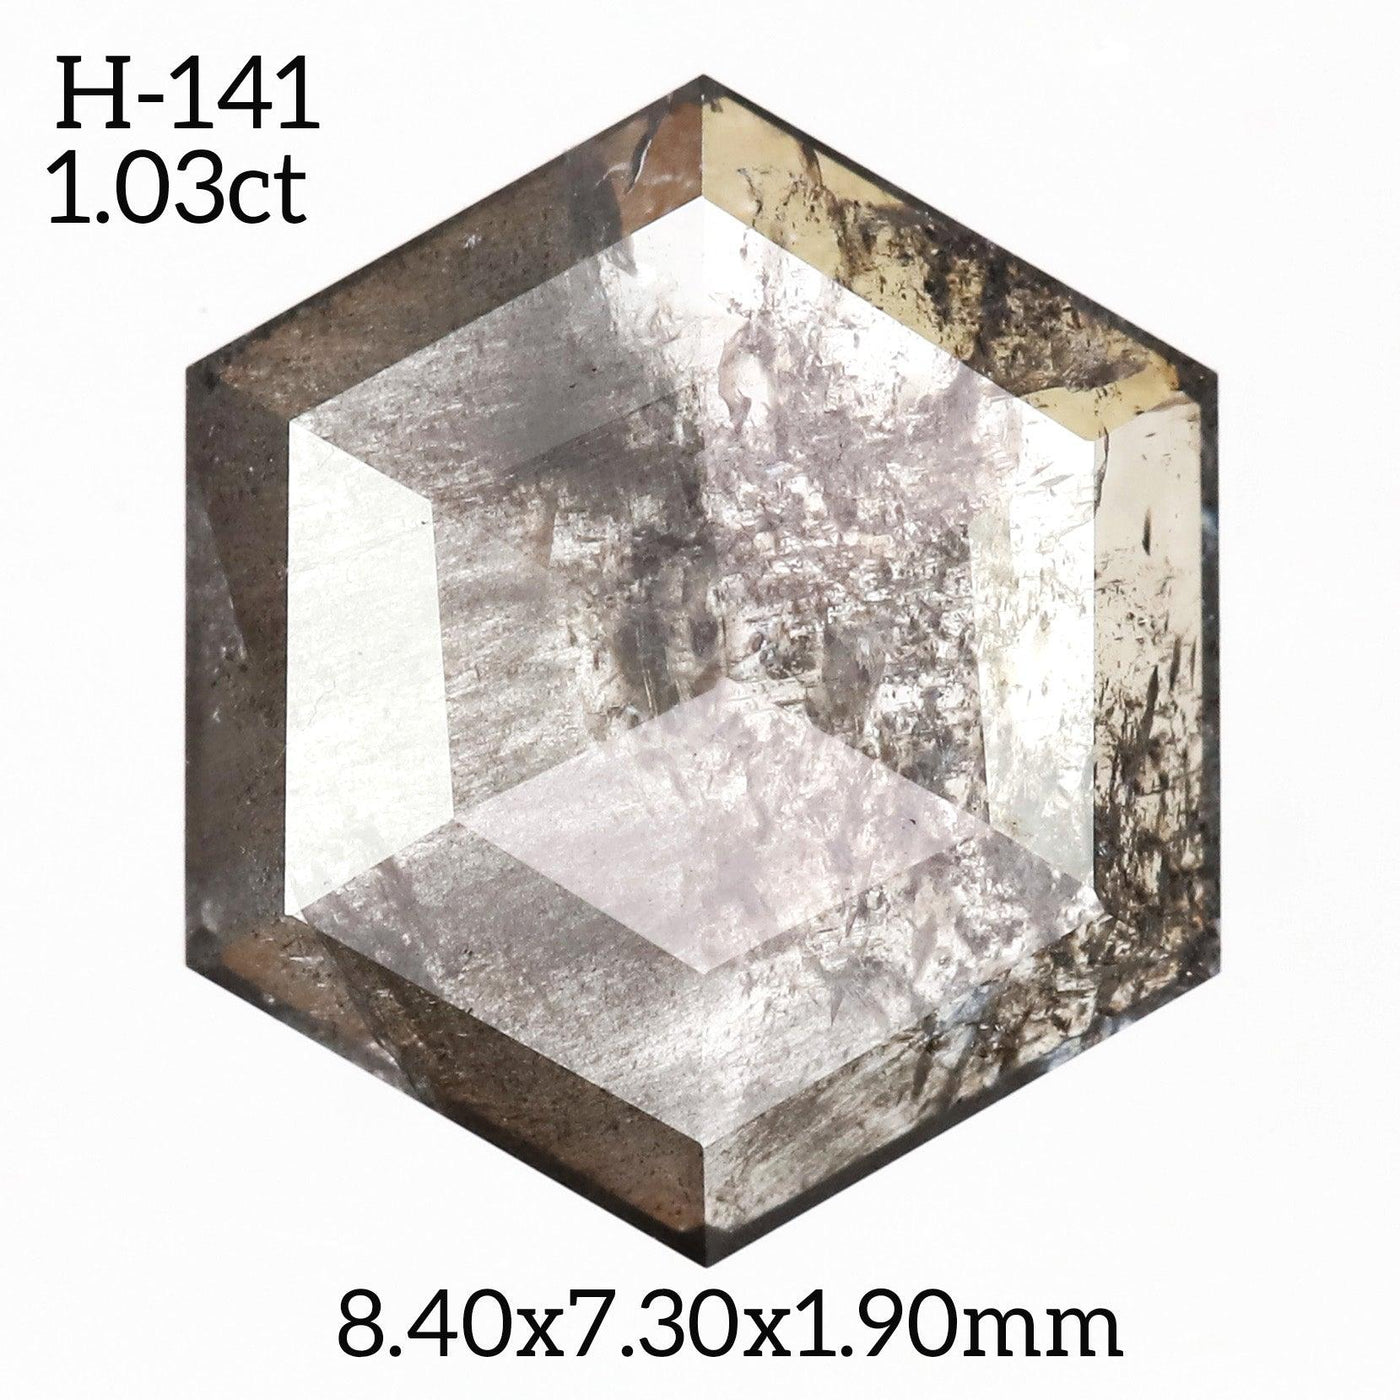 H141 - Salt and pepper hexagon diamond